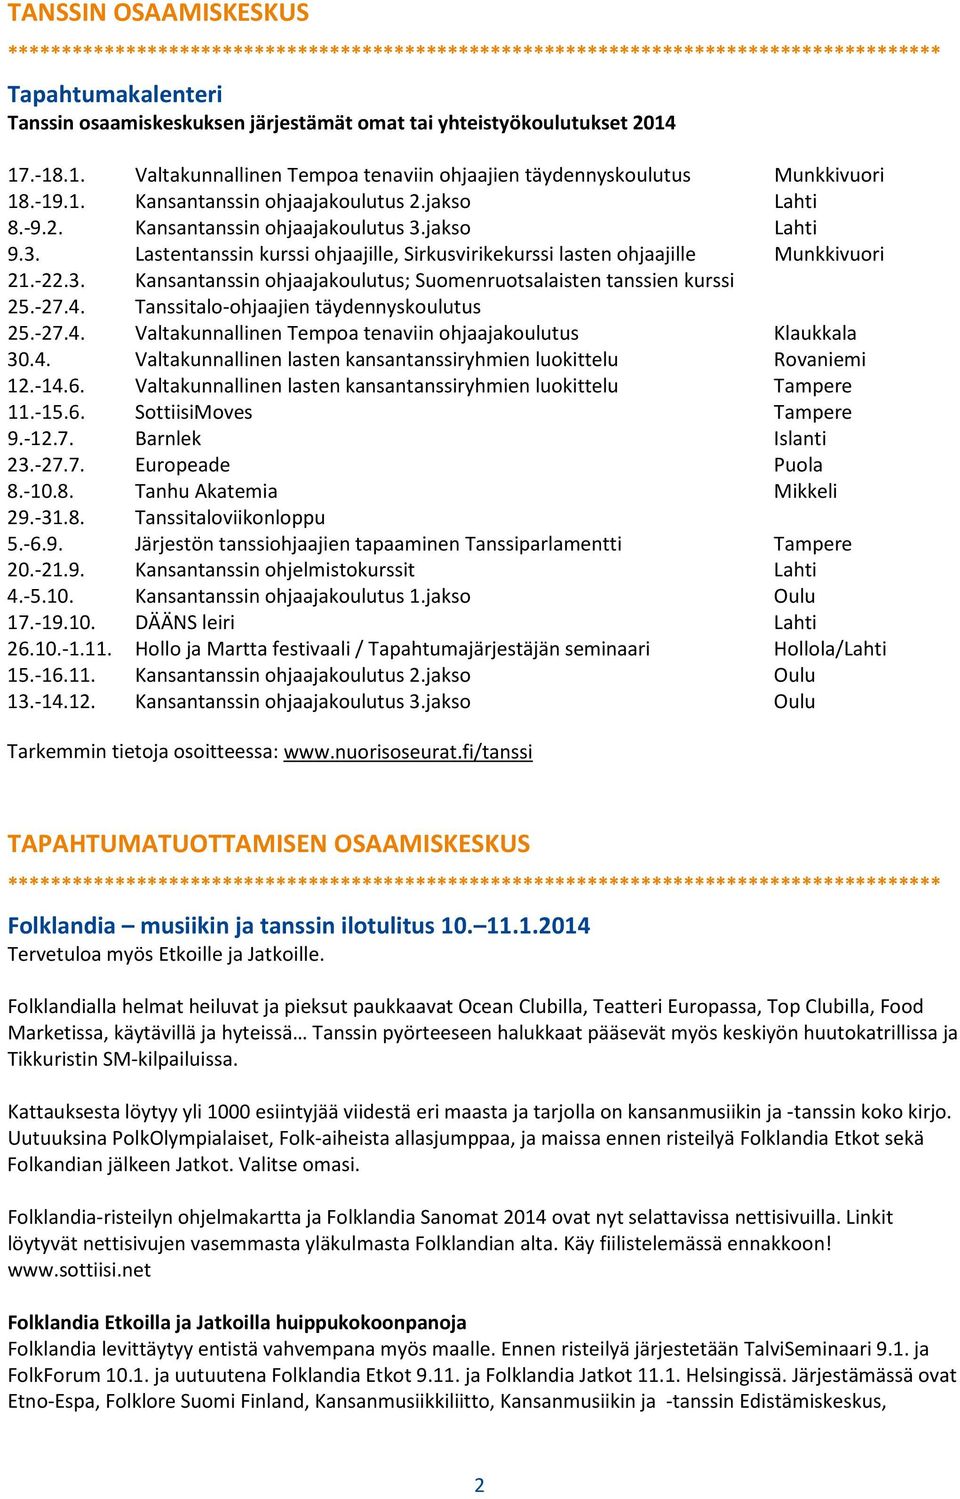 -27.4. Tanssitalo-ohjaajien täydennyskoulutus 25.-27.4. Valtakunnallinen Tempoa tenaviin ohjaajakoulutus Klaukkala 30.4. Valtakunnallinen lasten kansantanssiryhmien luokittelu Rovaniemi 12.-14.6.